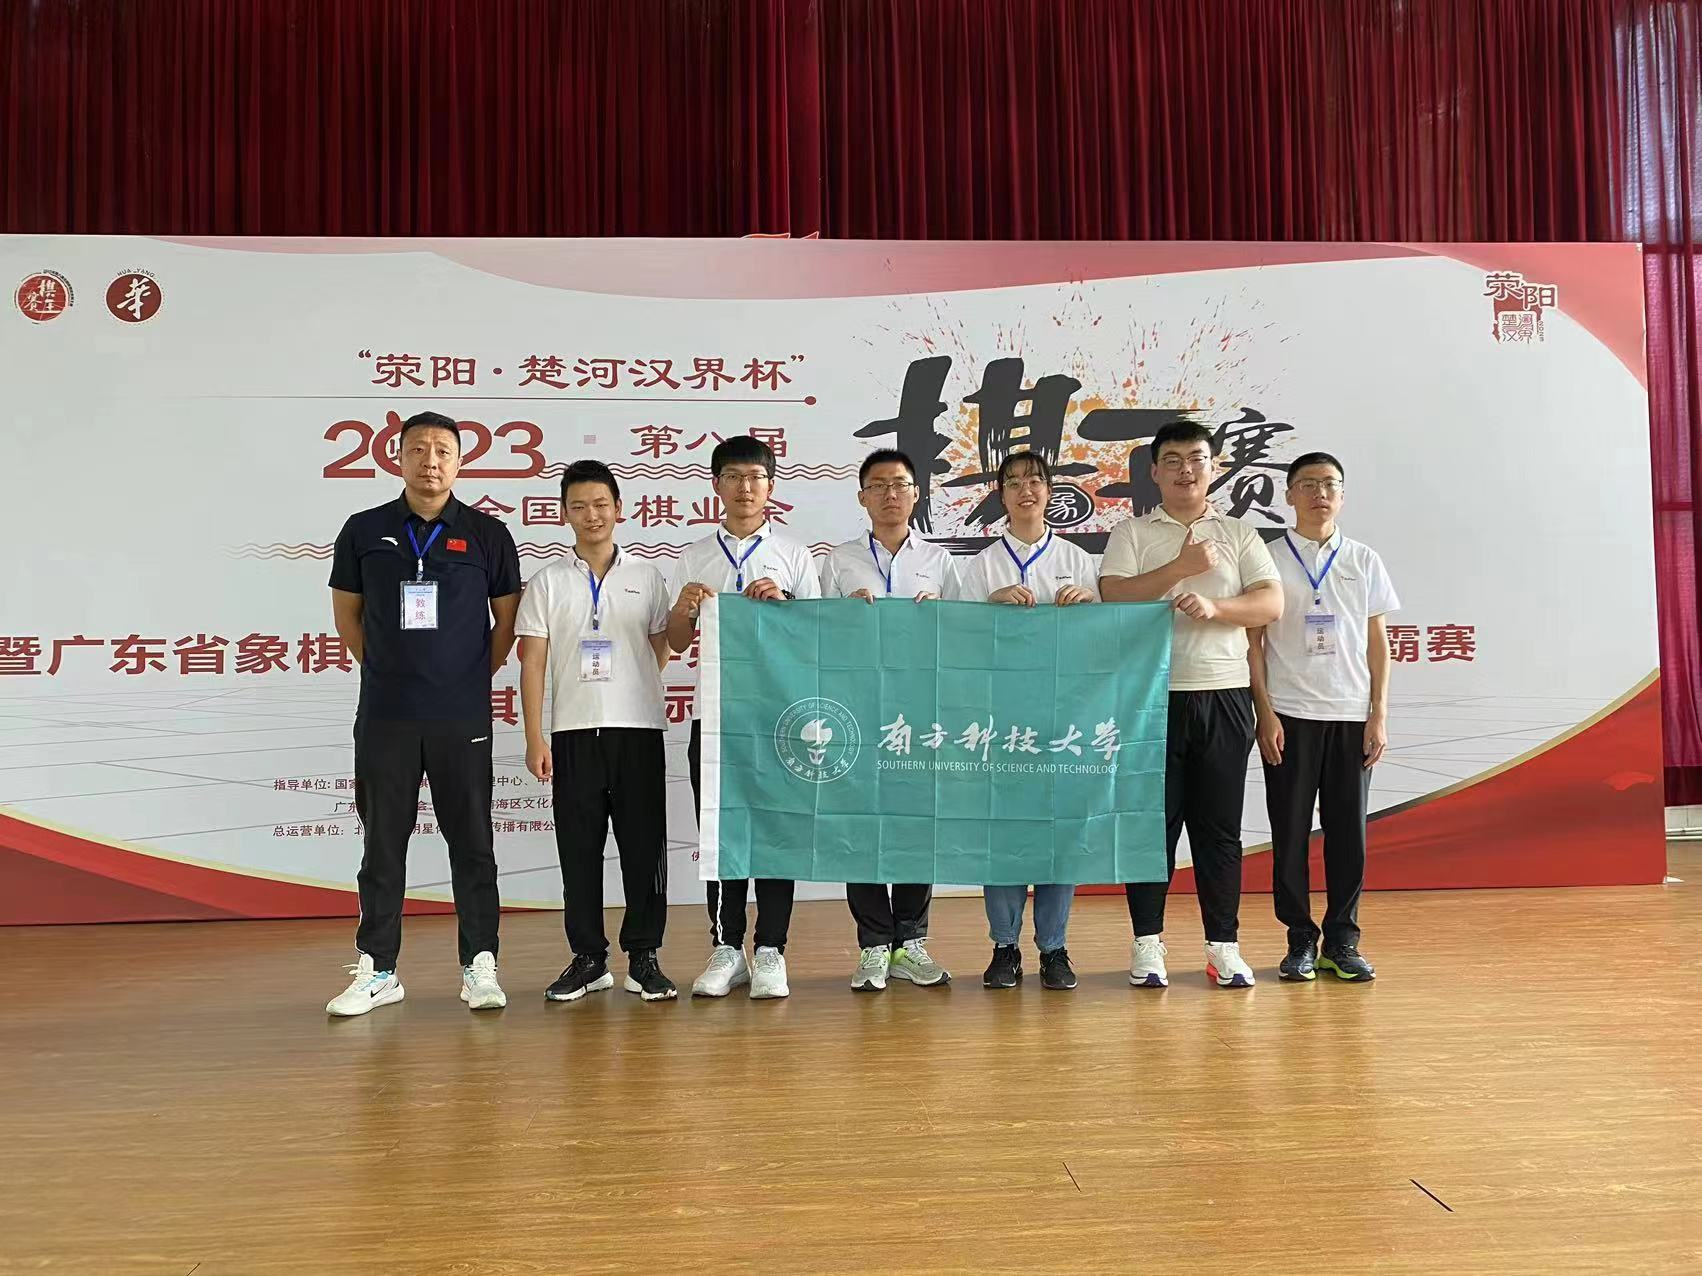 我校围棋代表队在23年广东省围棋类锦标赛中荣获团体冠军